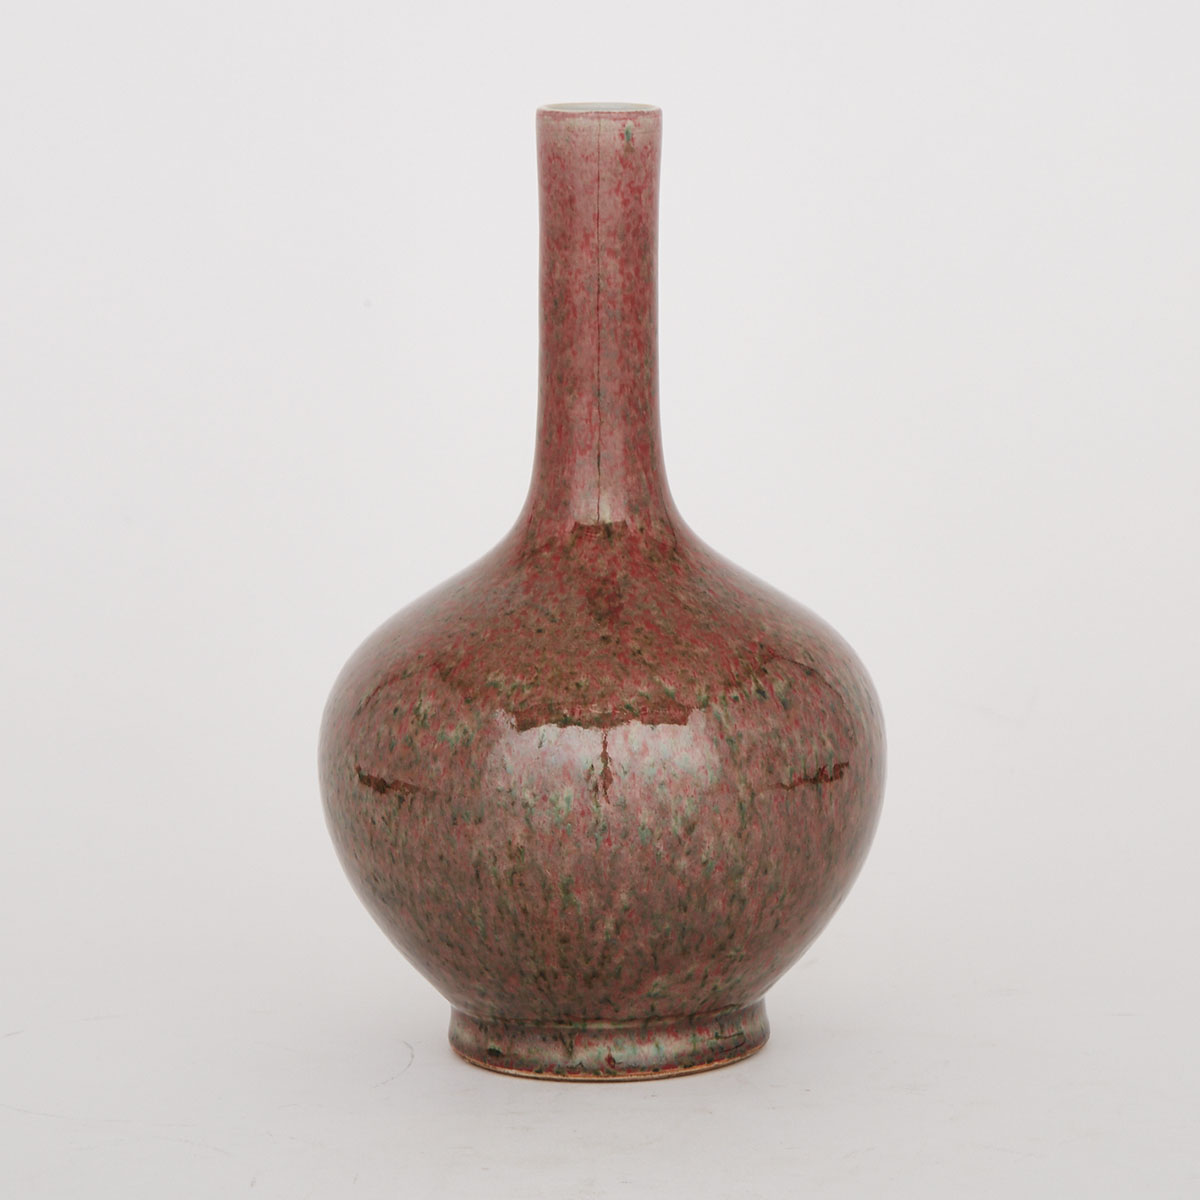 A Long Neck Porcelain Vase